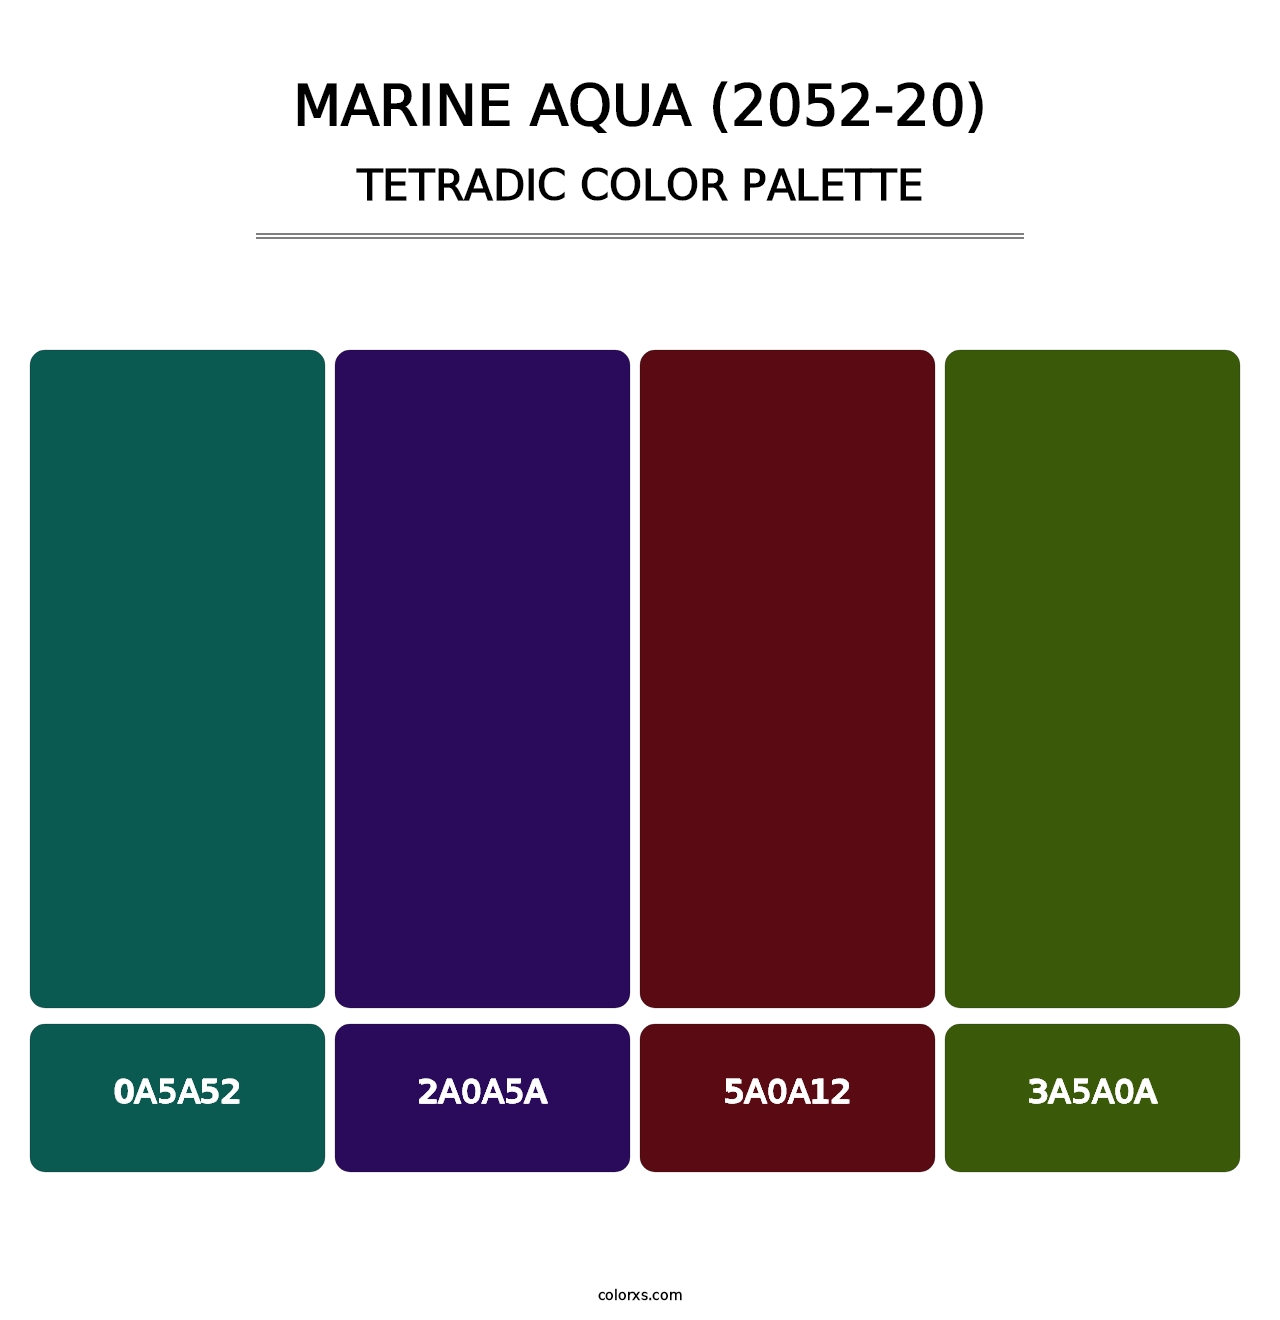 Marine Aqua (2052-20) - Tetradic Color Palette